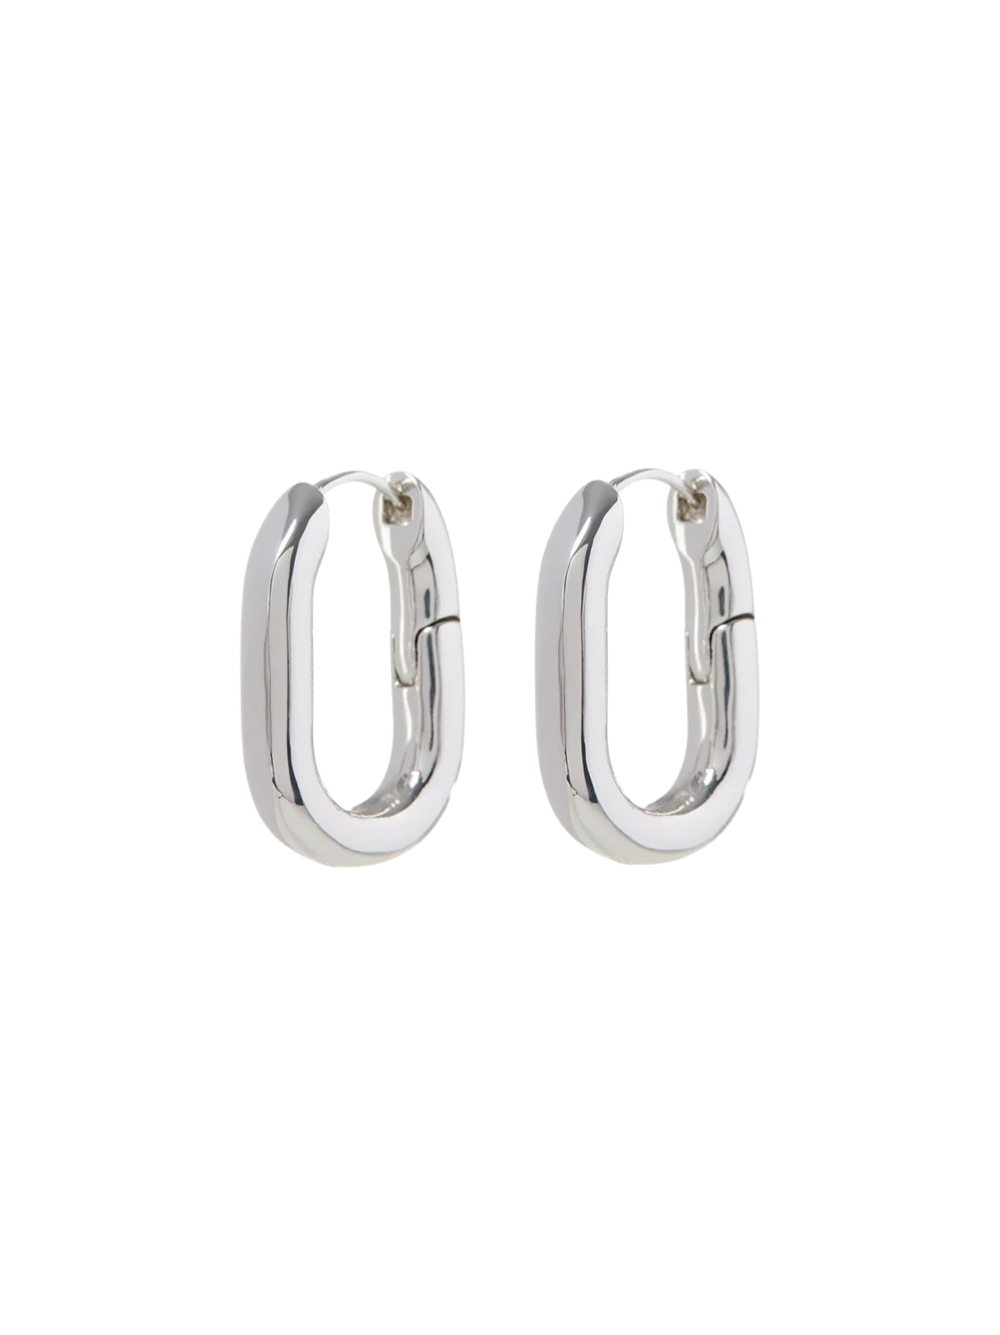 Luv AJ XL Chain Link Hoop Earrings in Silver